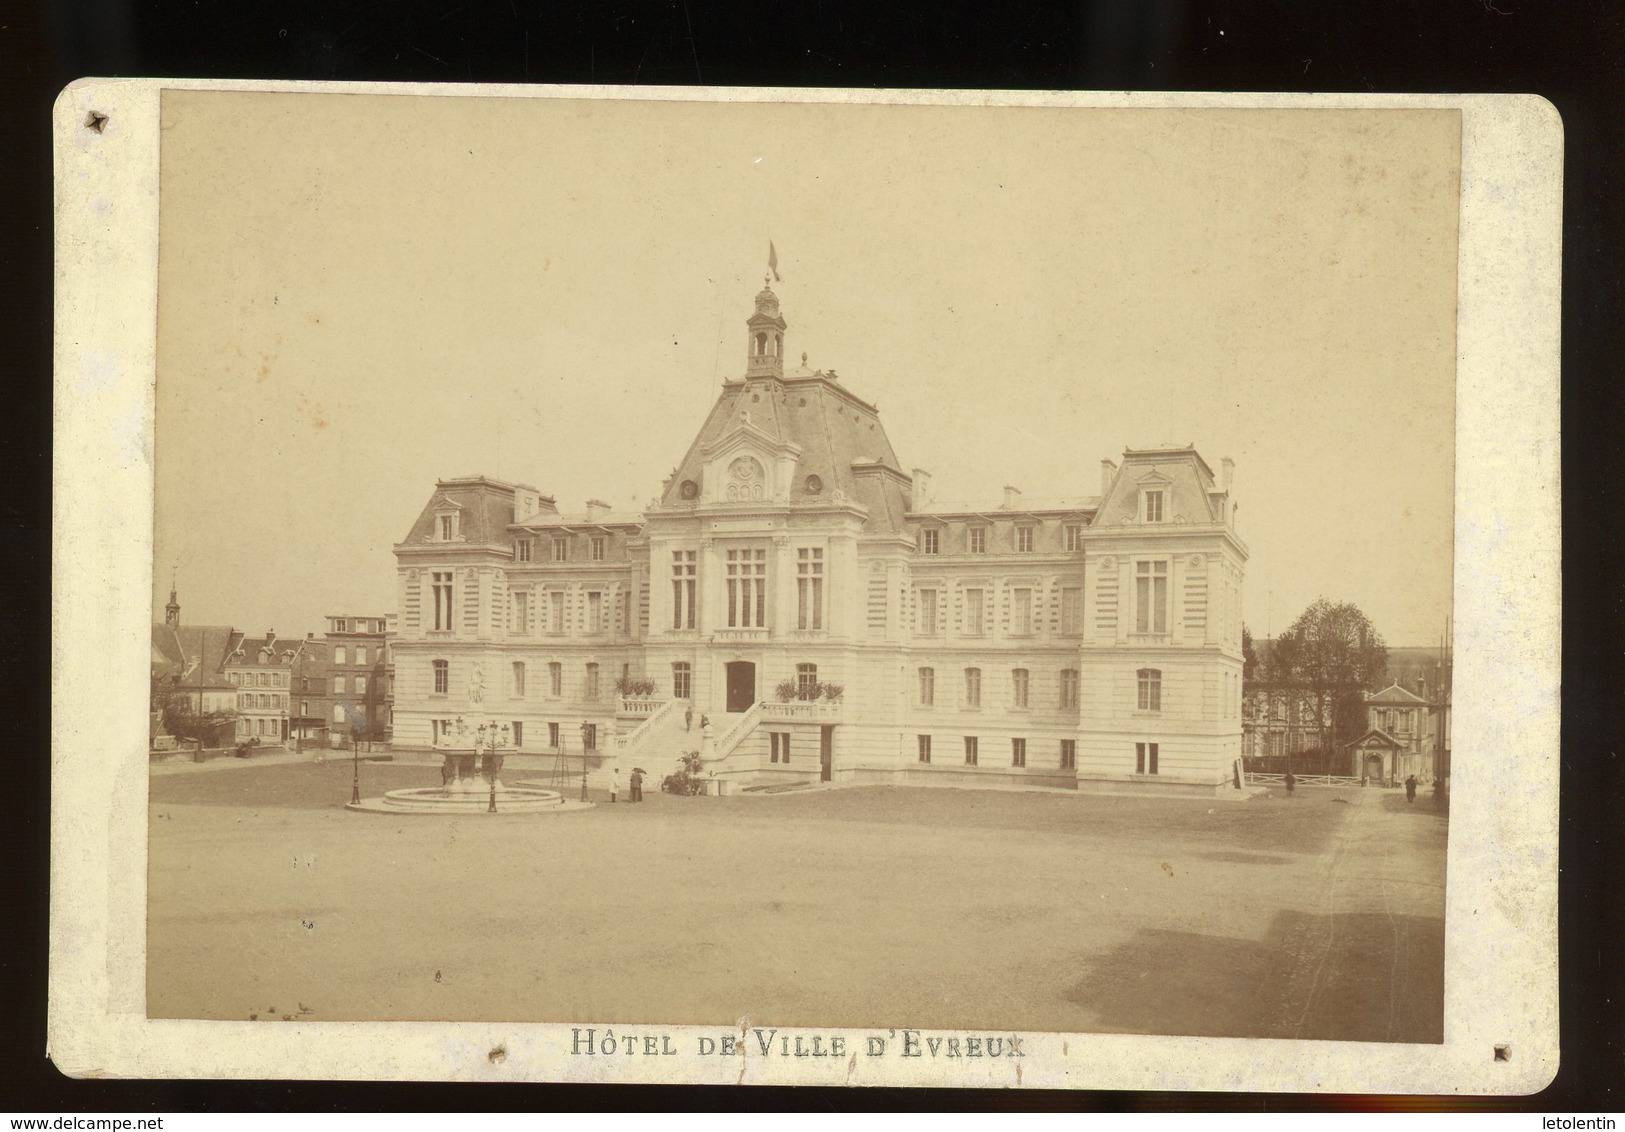 PHOTO ORIGINALE (PAPIER ALBUMINÉ) (10X16) SUR CARTON - HOTEL DE VILLE D'EVREUX, PHOTO DE BERTHAUD À EVREUX - Alte (vor 1900)